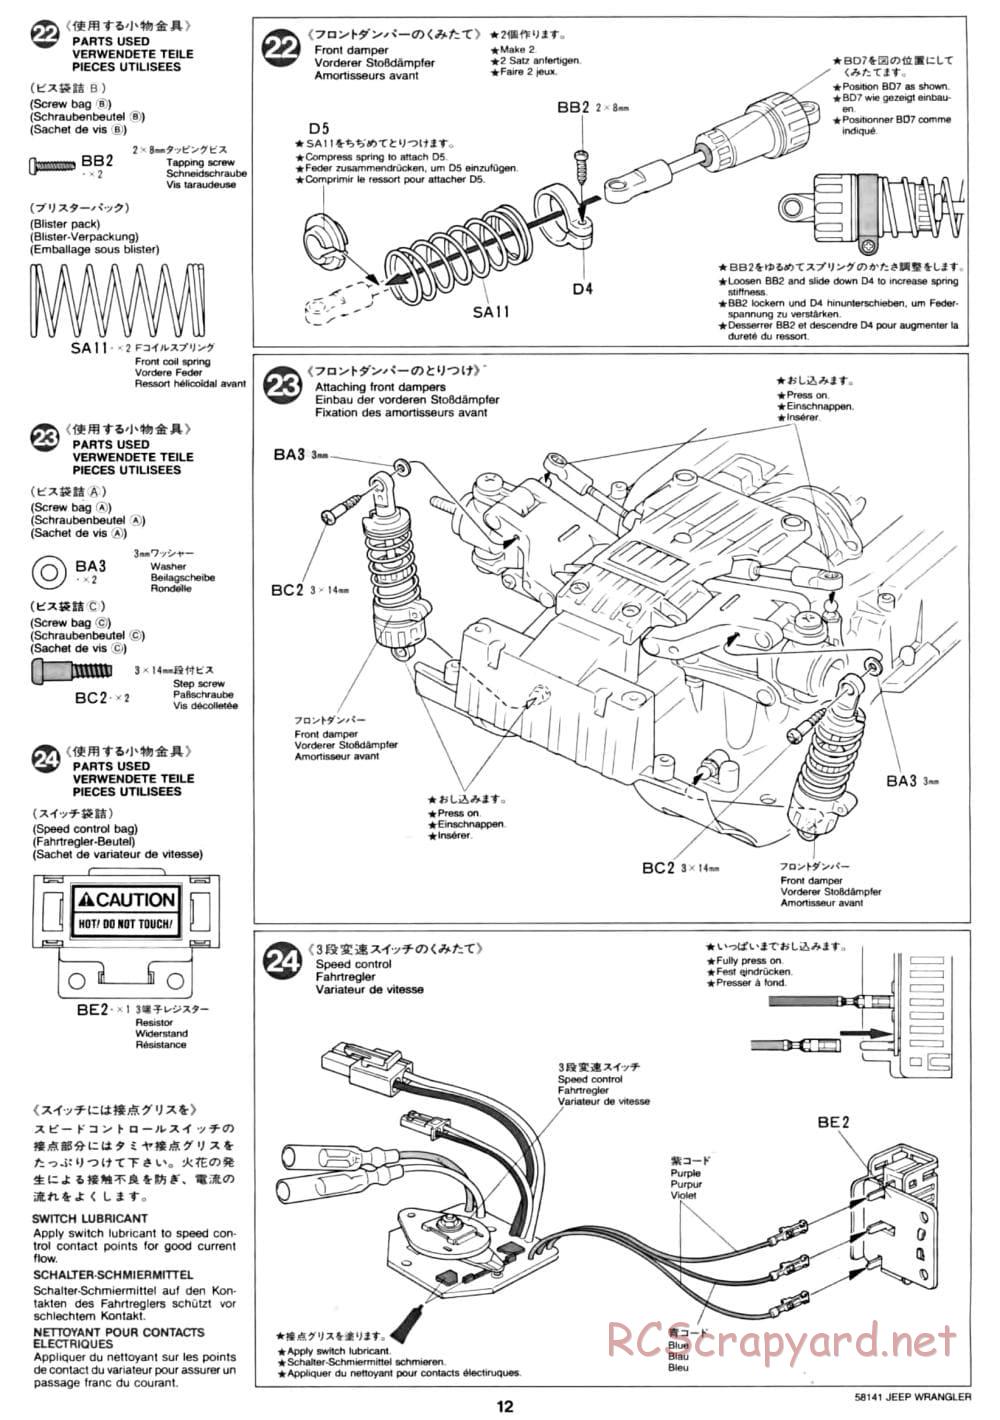 Tamiya - Jeep Wrangler - CC-01 Chassis - Manual - Page 12